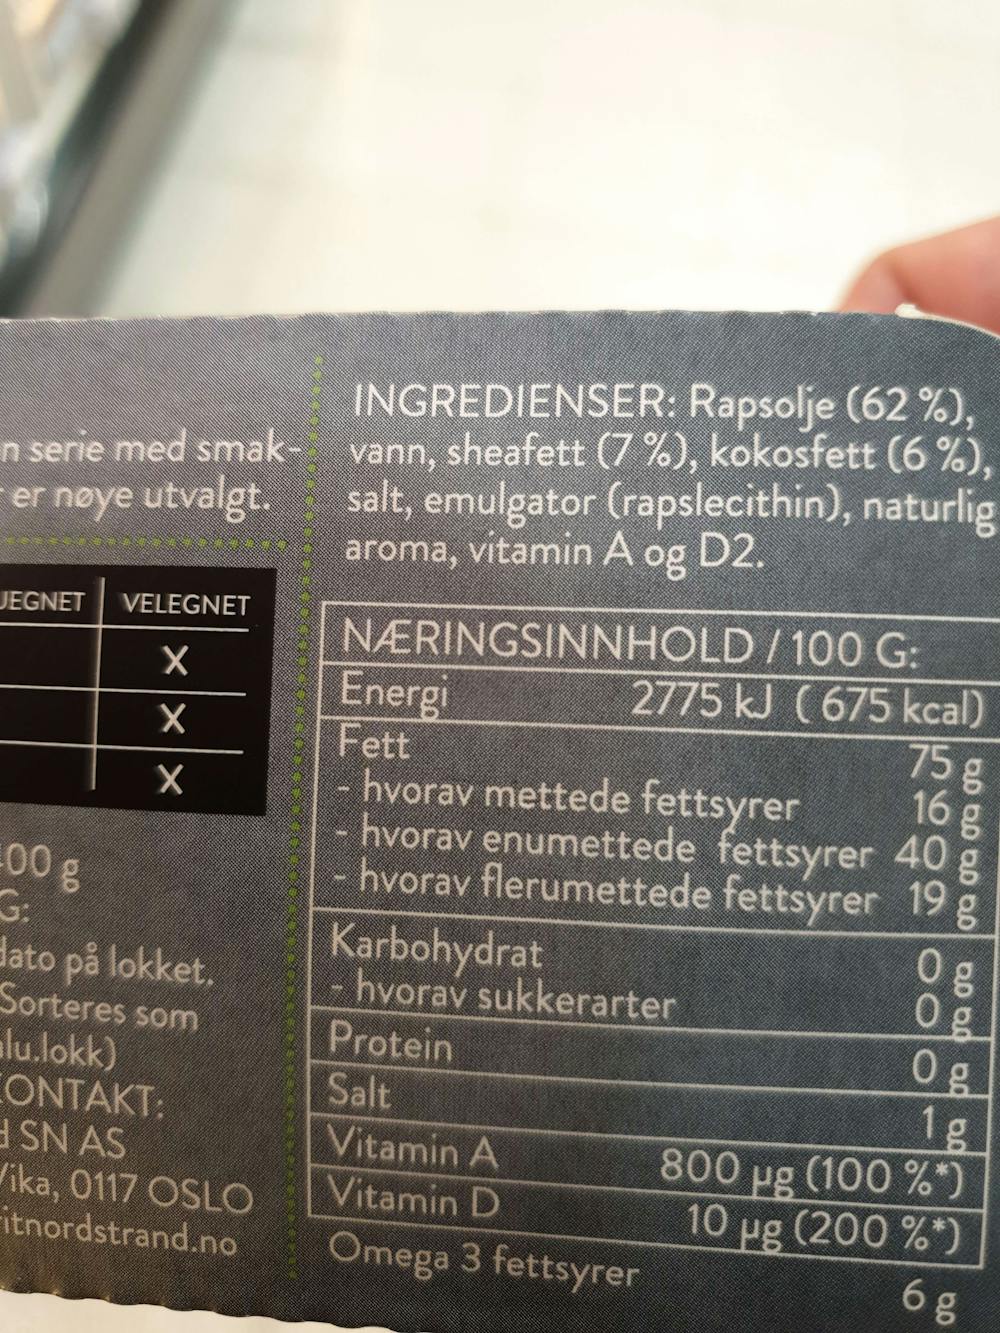 Ingredienslisten til Made by Berit Nordstrand Smøremyk